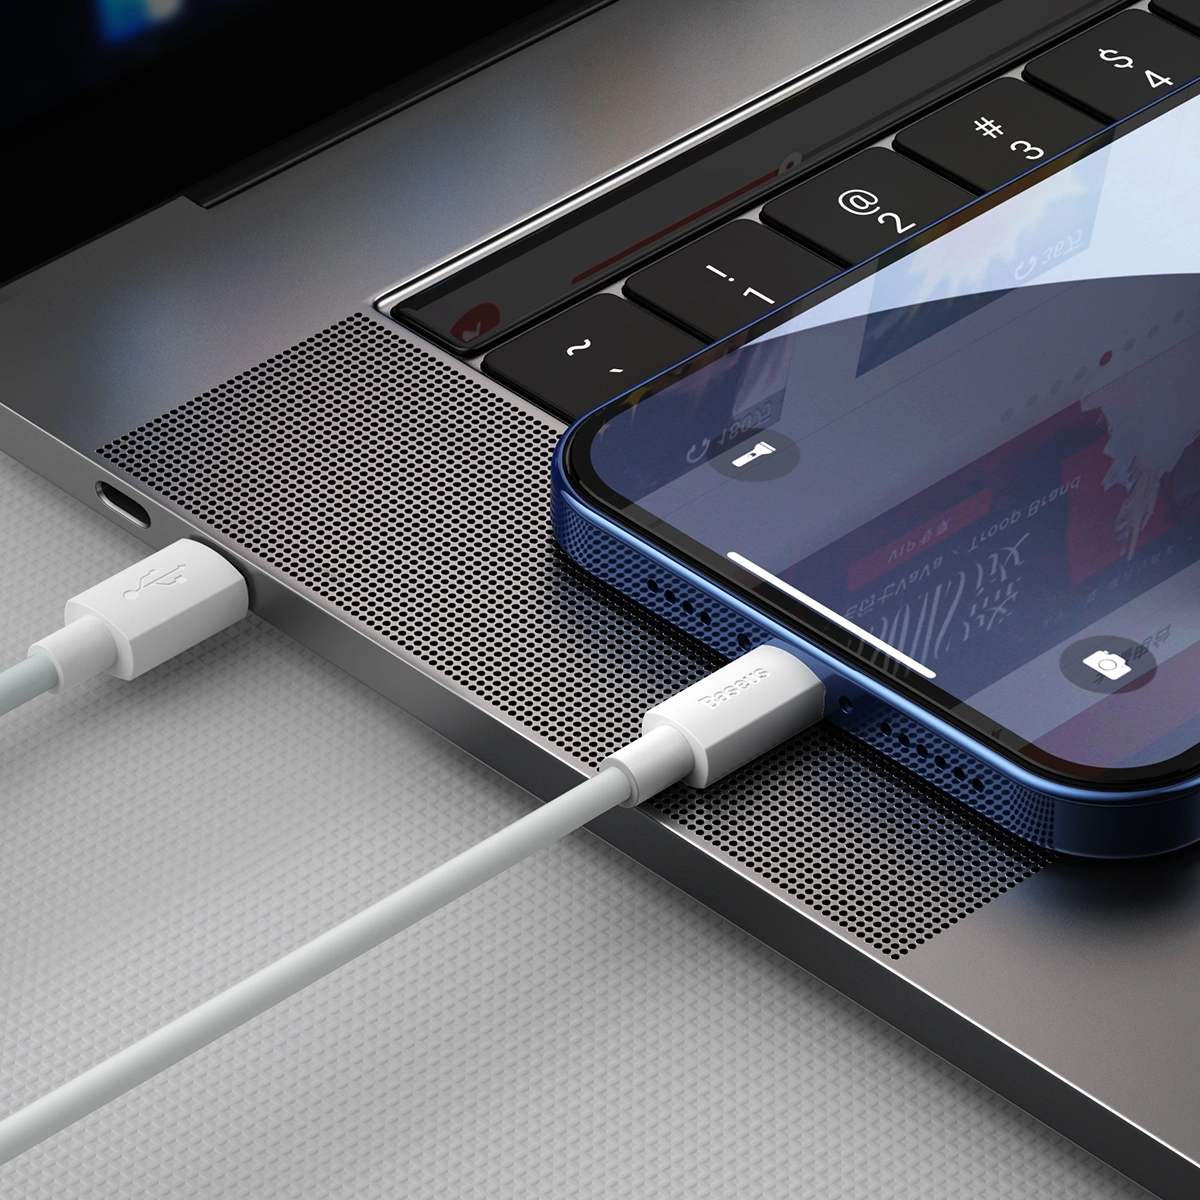 Übertragen von Daten mit Baseus Simple Cable vom iPhone auf das MacBook Pro